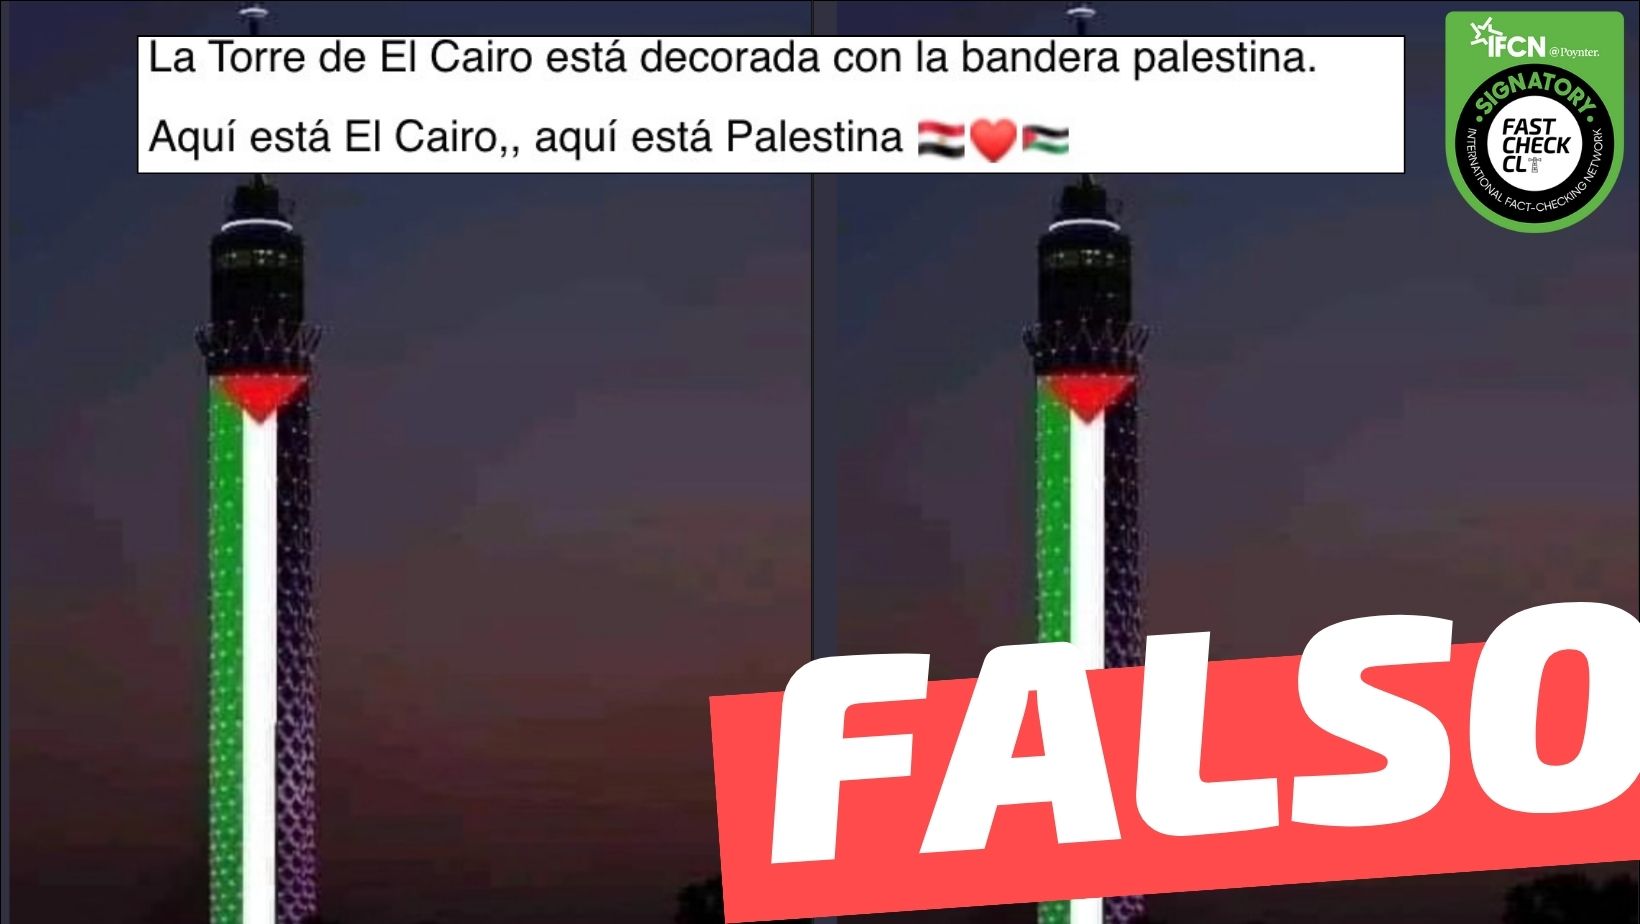 You are currently viewing (Imagen) “La torre de El Cairo está decorada con la bandera palestina”: #Falso